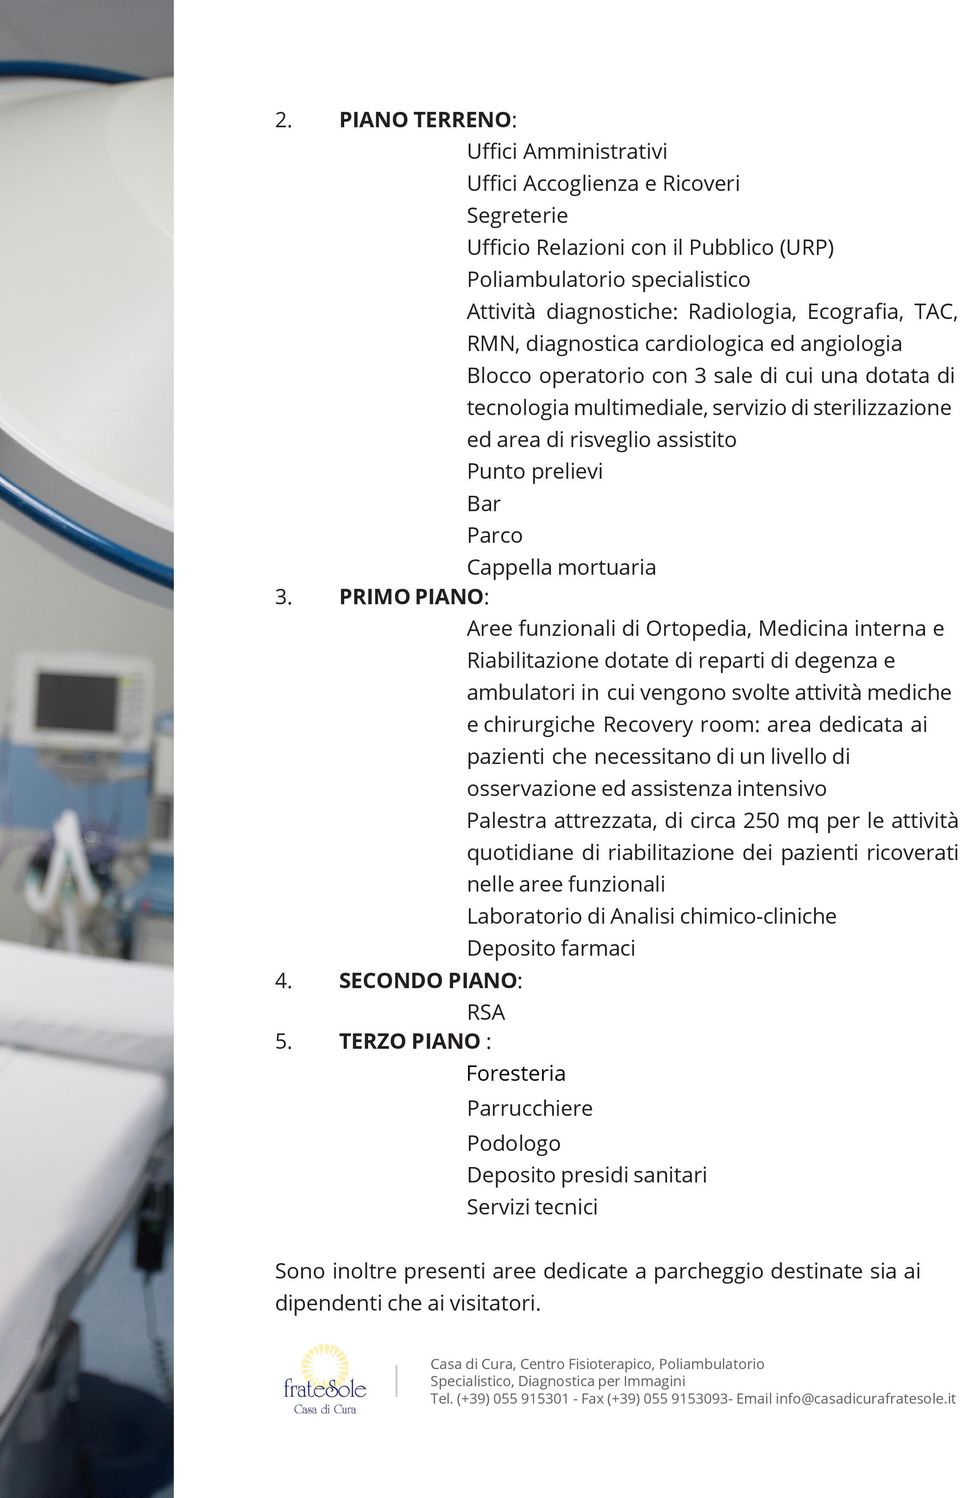 RMN, diagnostica cardiologica ed angiologia Blocco operatorio con 3 sale di cui una dotata di tecnologia multimediale, servizio di sterilizzazione ed area di risveglio assistito Punto prelievi Bar